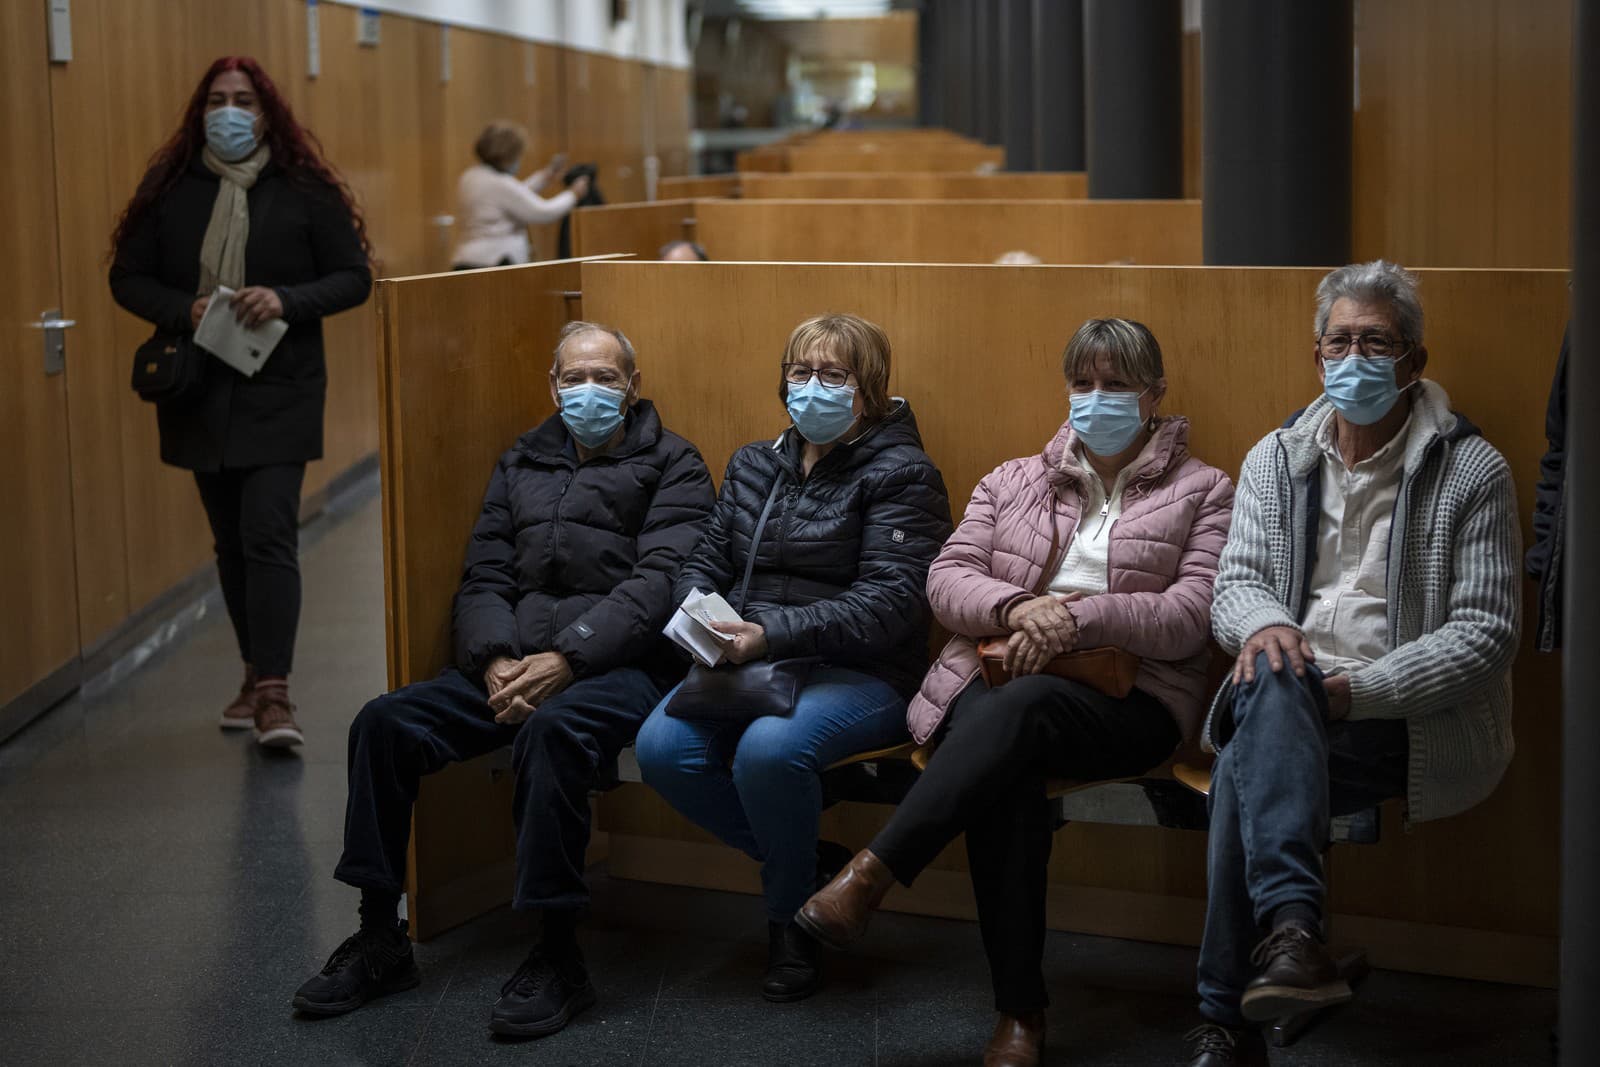 Ľudia, ktorí majú preventívne masky na tvár, chodia do nemocnice v Barcelone.